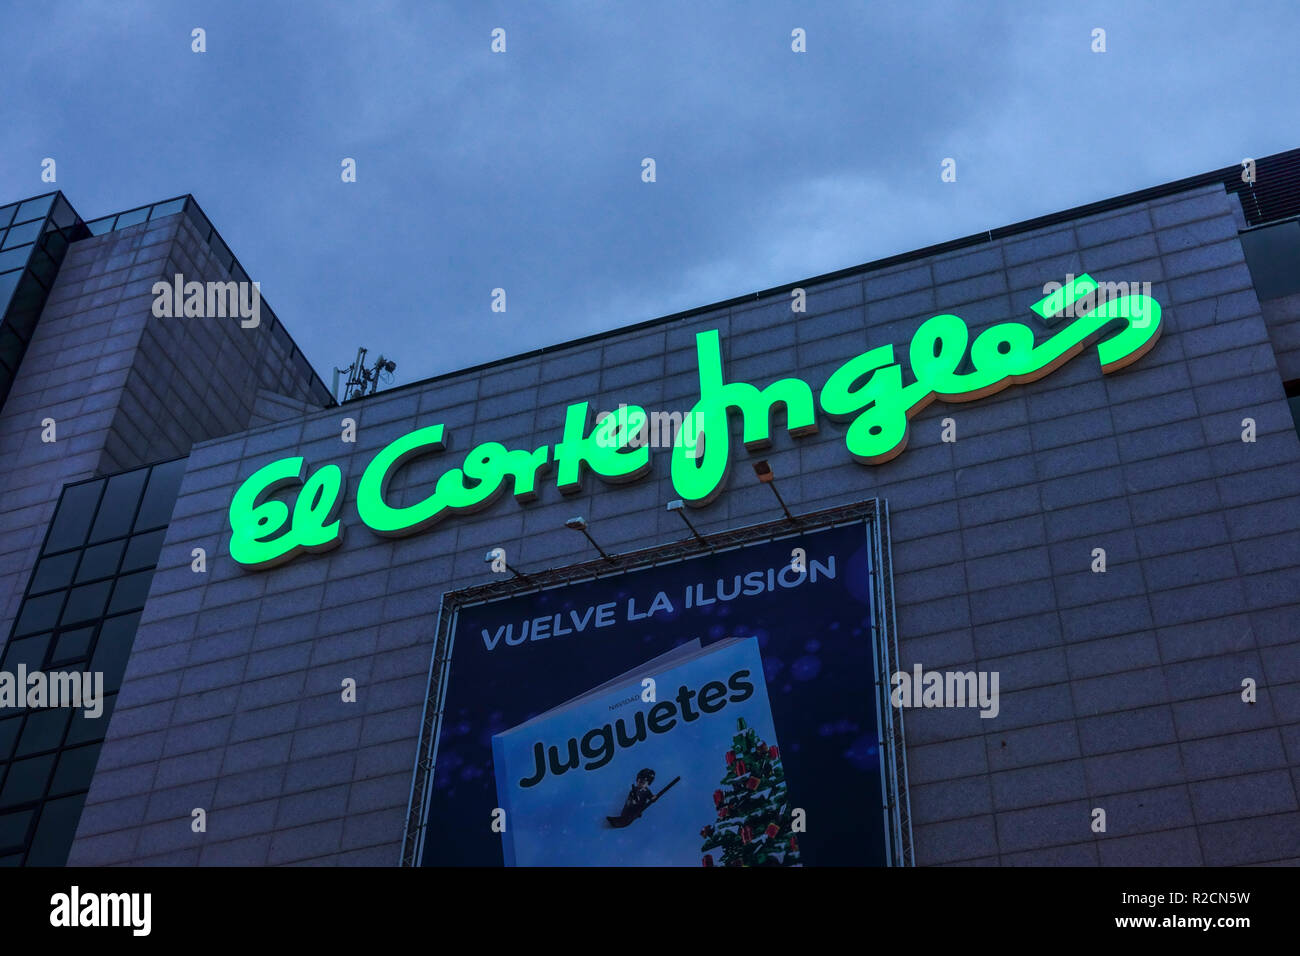 El Corte Ingles, Shopping Centre, Alicante, Spain Stock Photo - Alamy